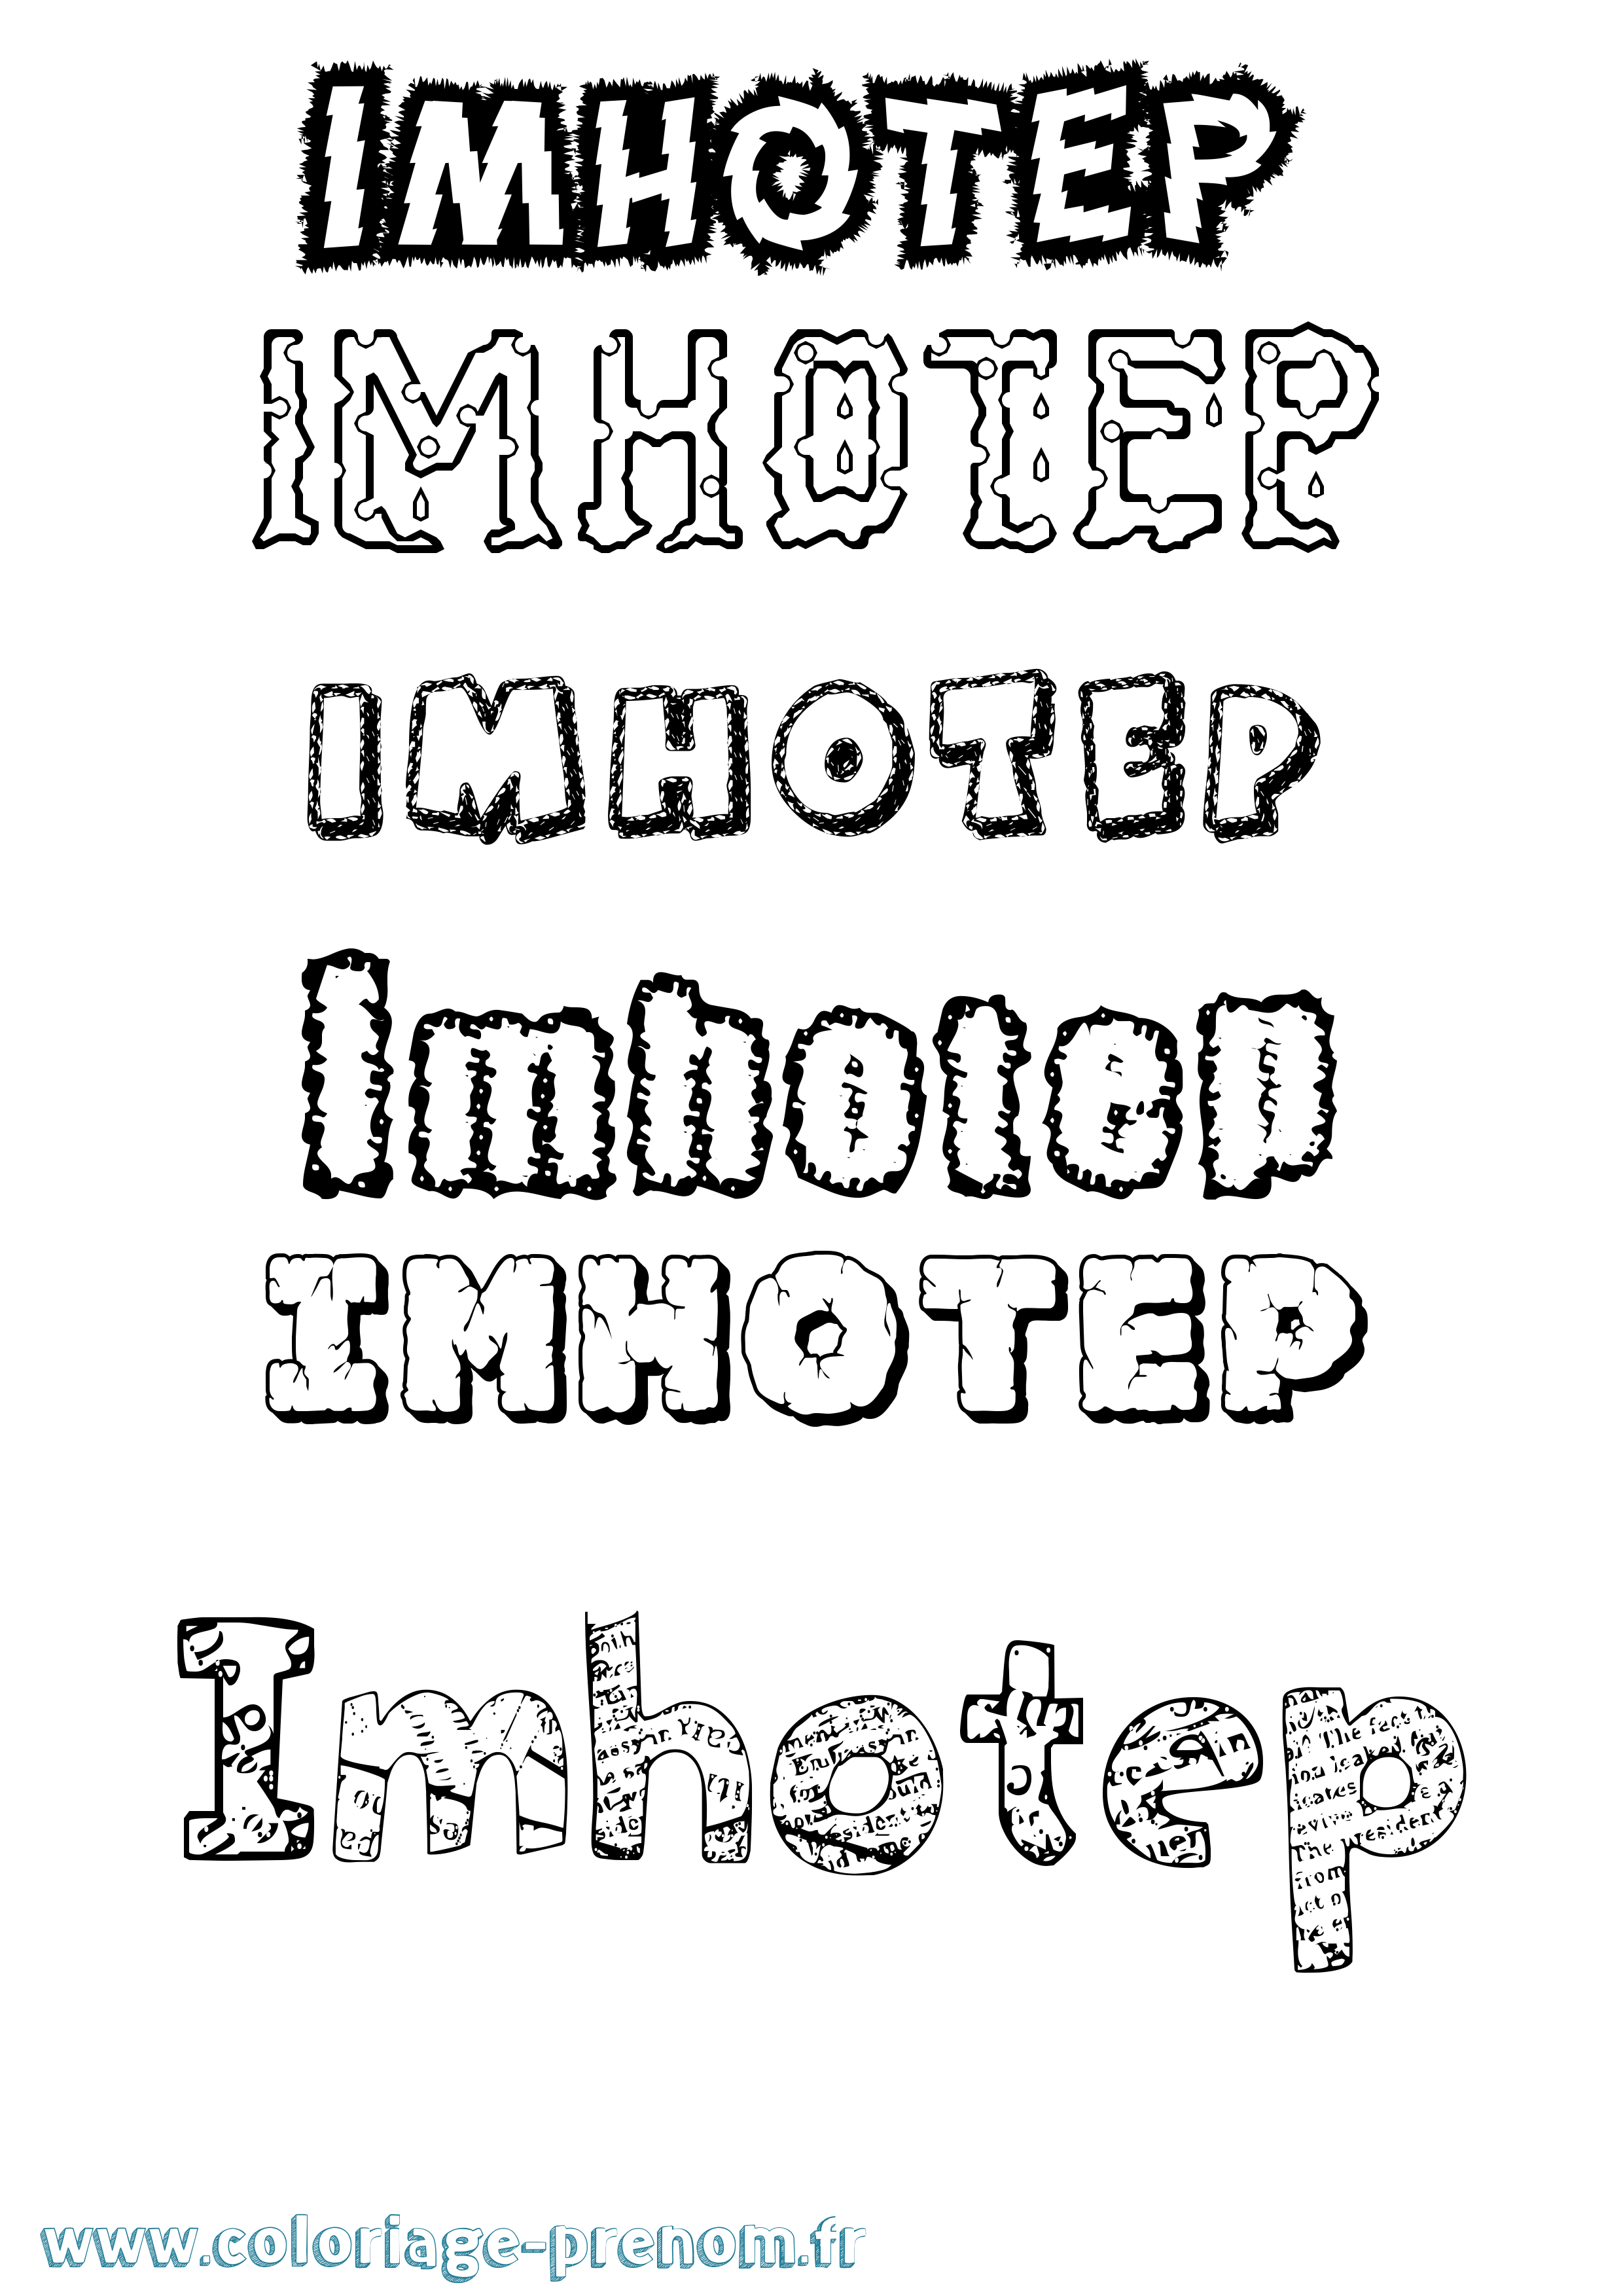 Coloriage prénom Imhotep Destructuré